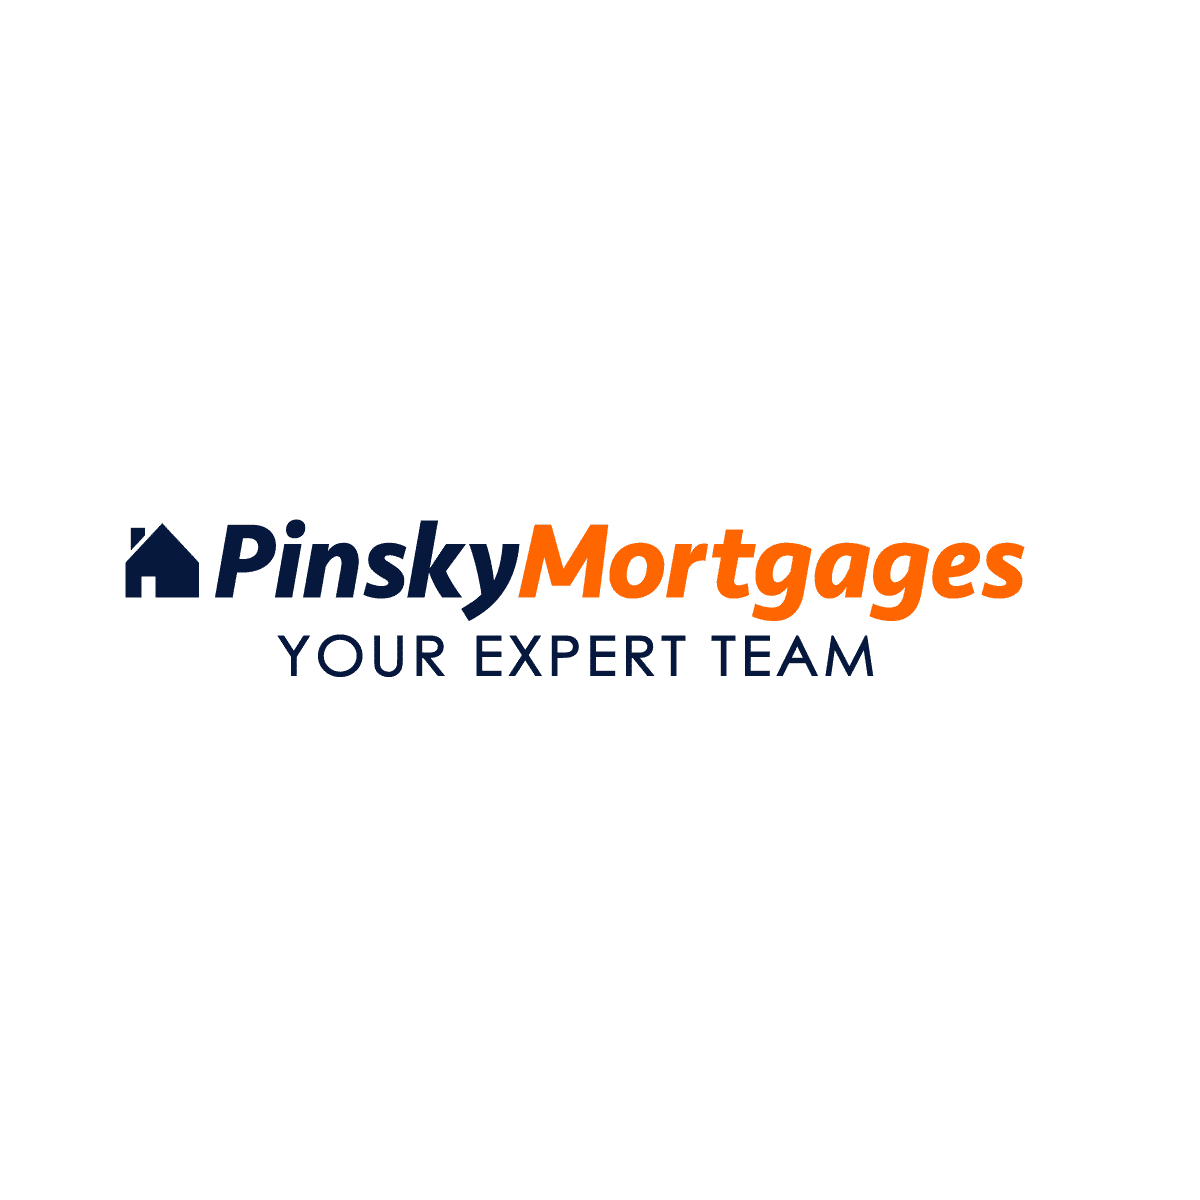 Pinsky Mortgages OG Image